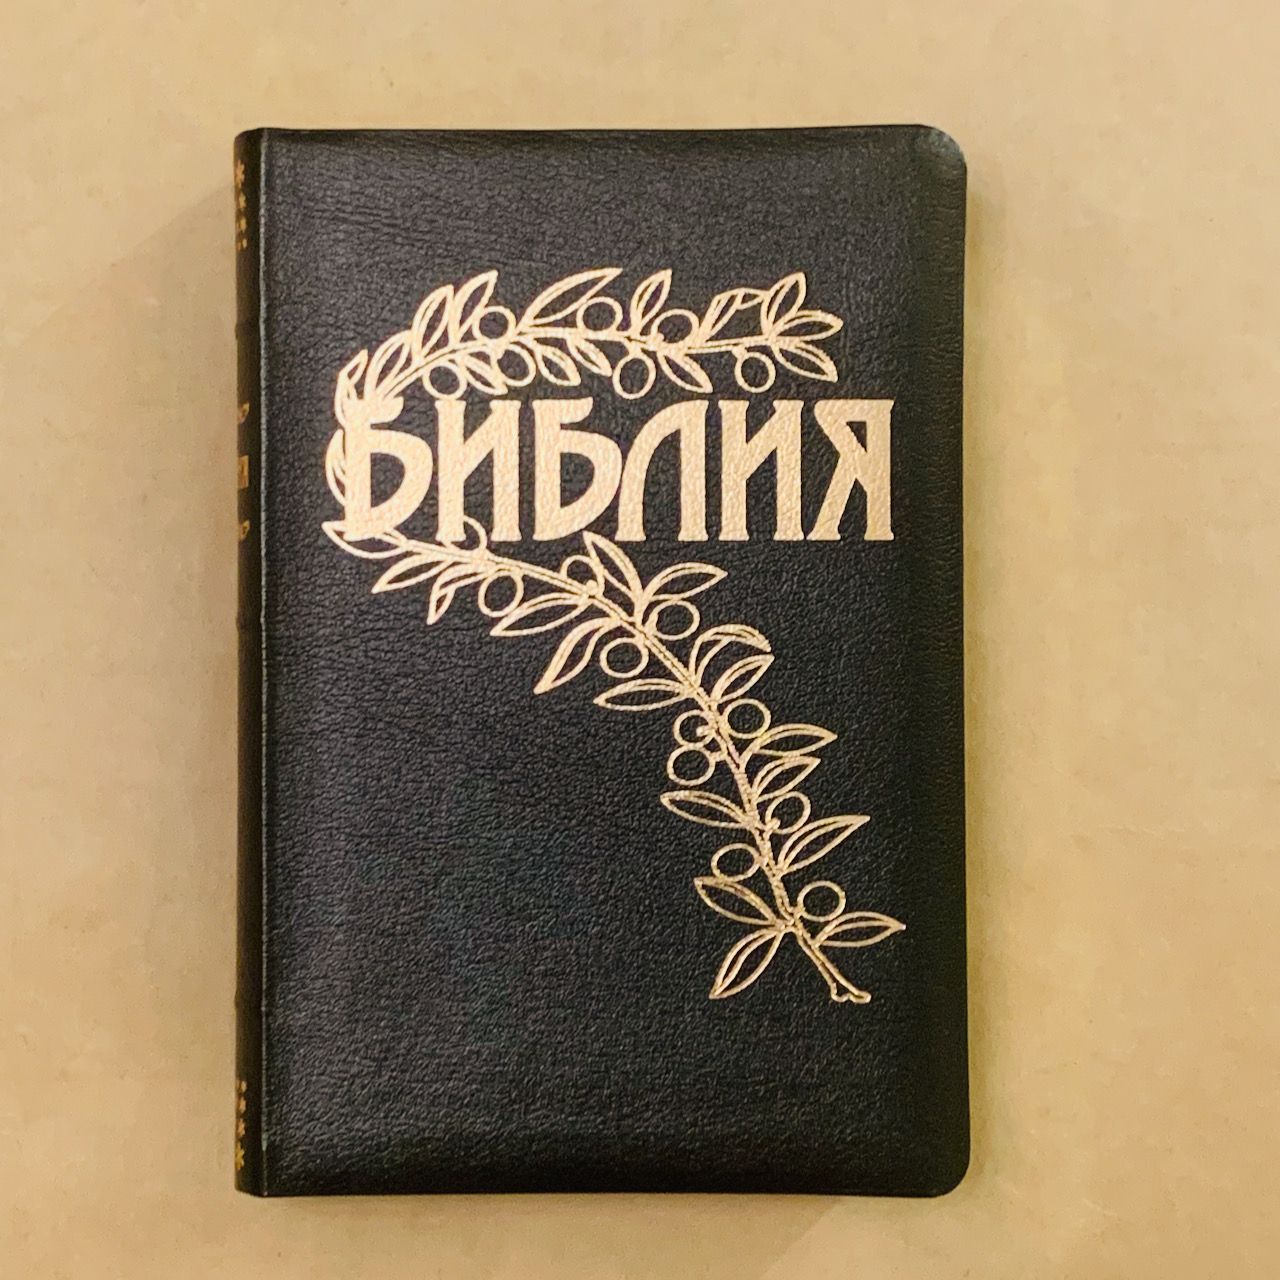 Библия Геце "с оливковой ветвью" 063 формат  (145*215 мм), чуть больше среднего  (прошитая), цвет черный, кожаный переплет, золотые страницы, код 1167 (11672)